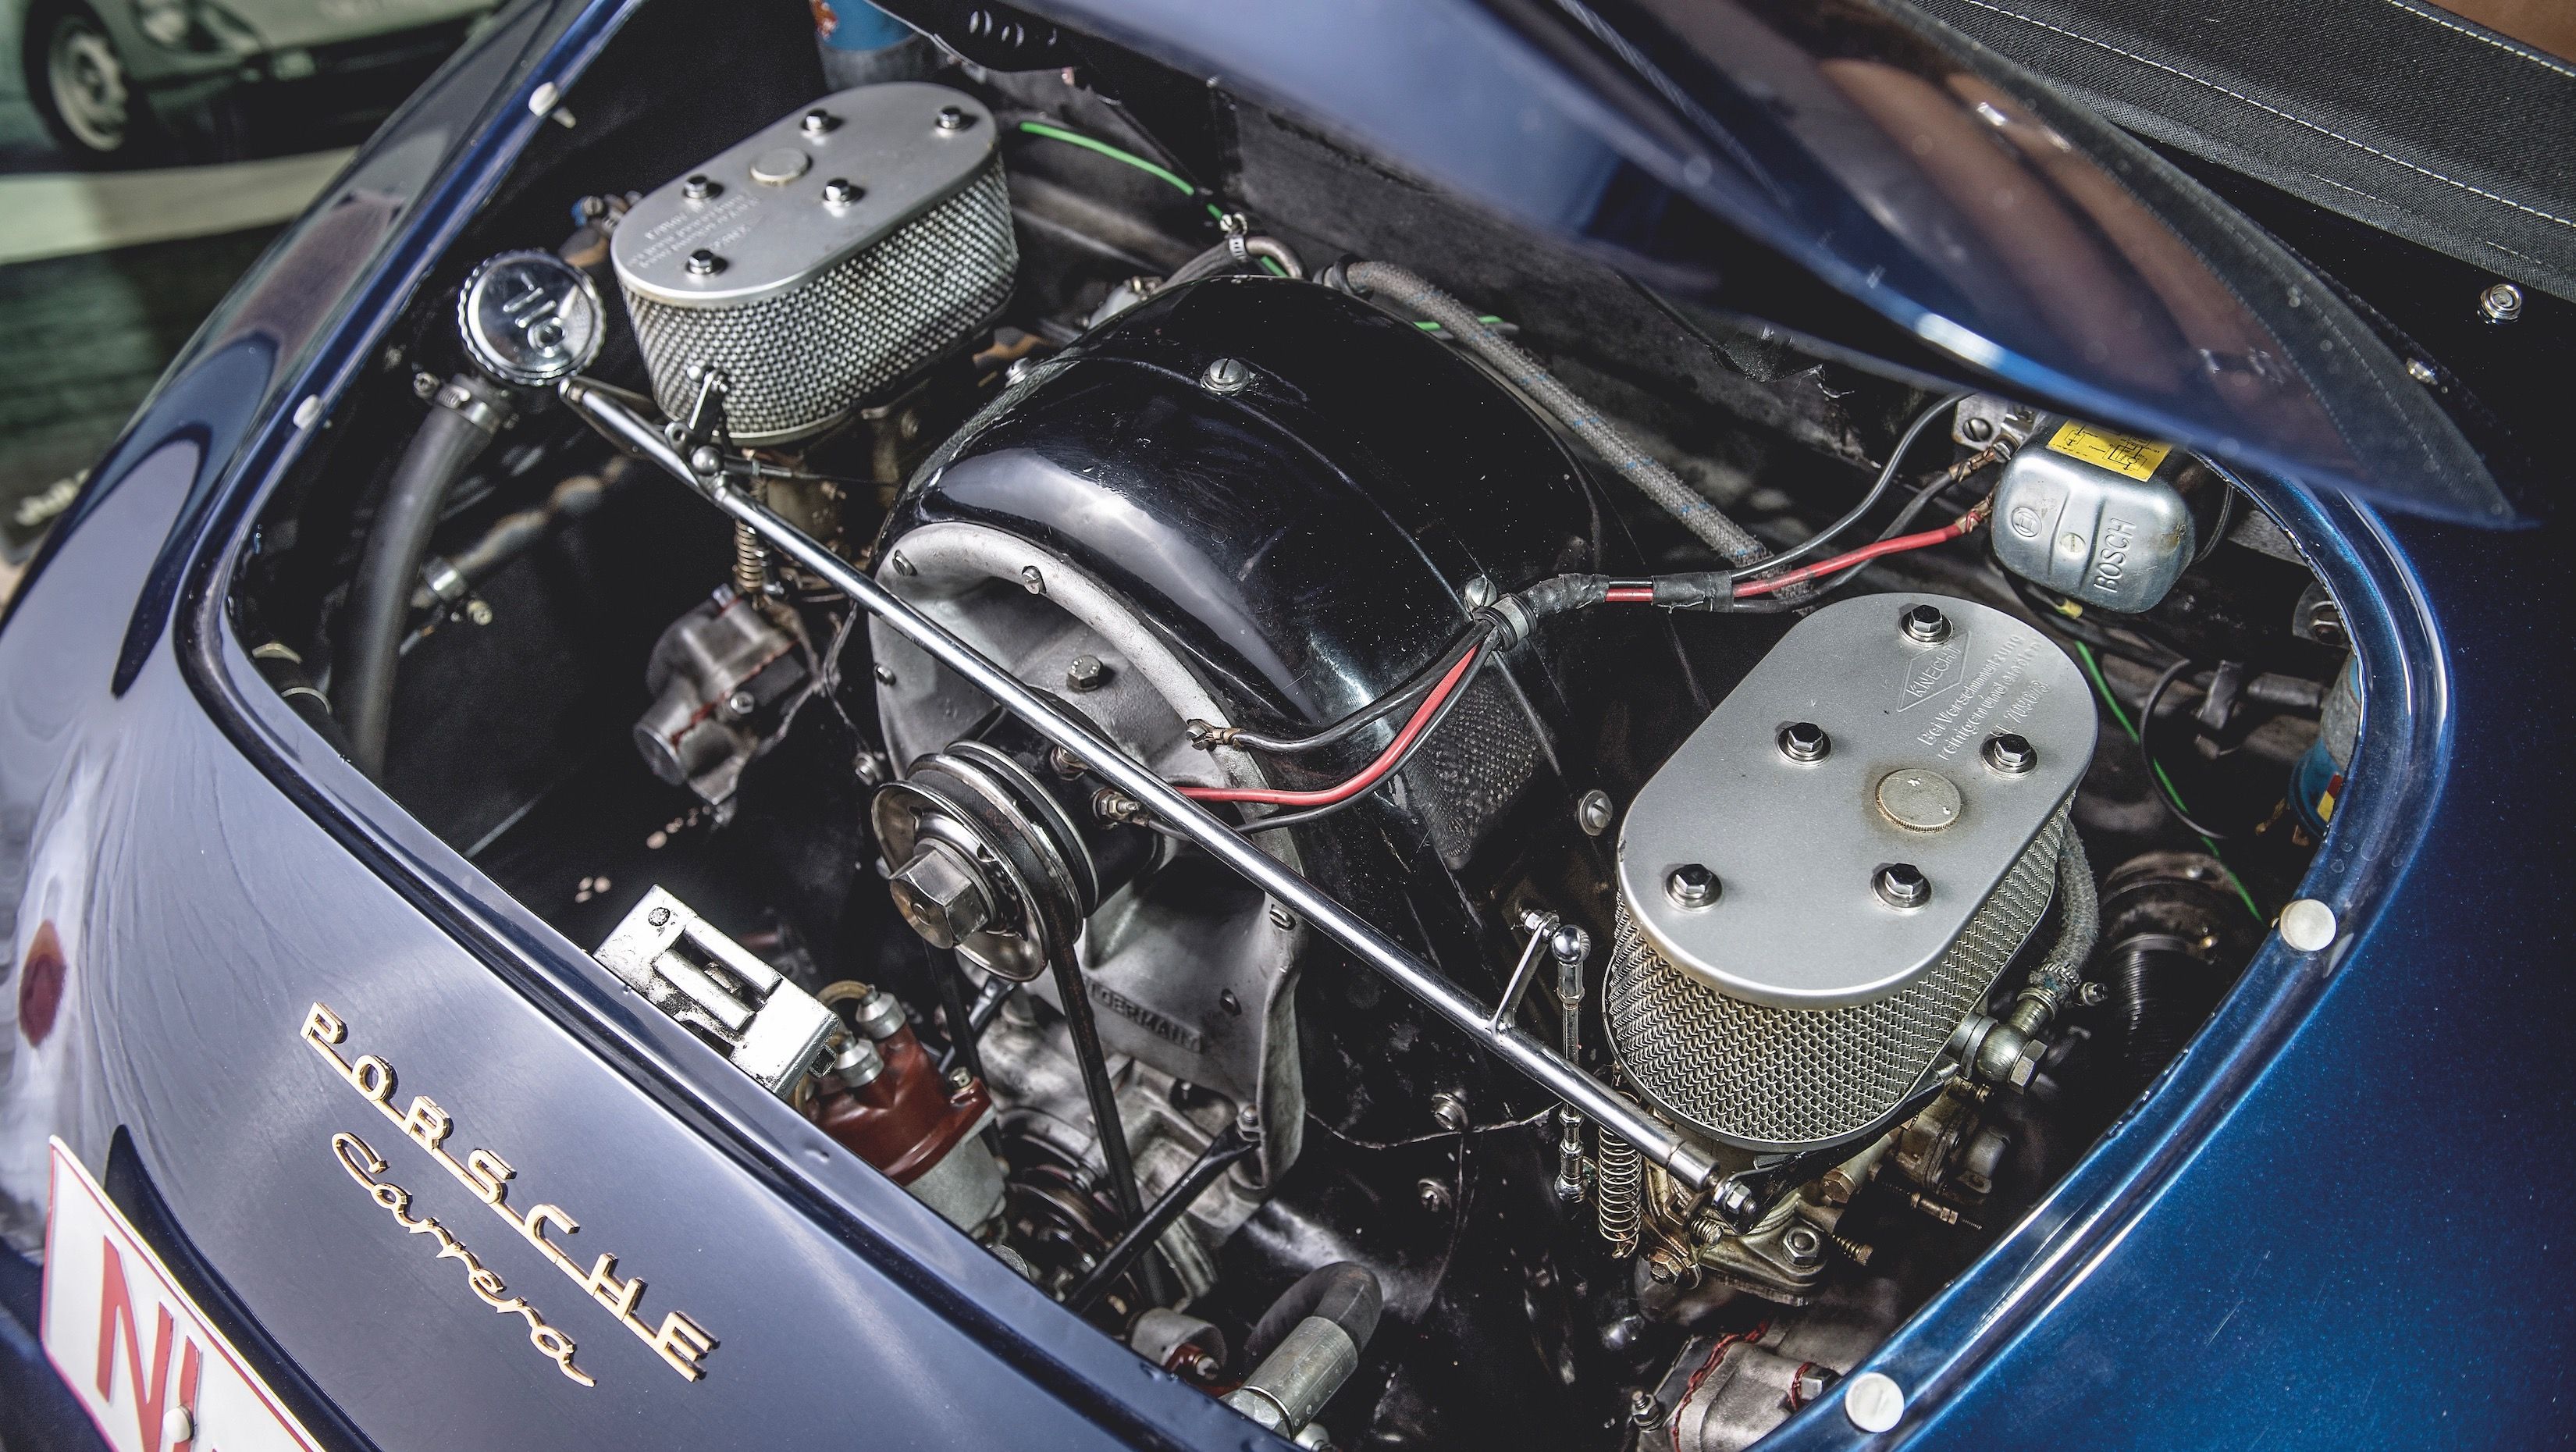 Porsche Furhman engine inside a 356 A cabriolet